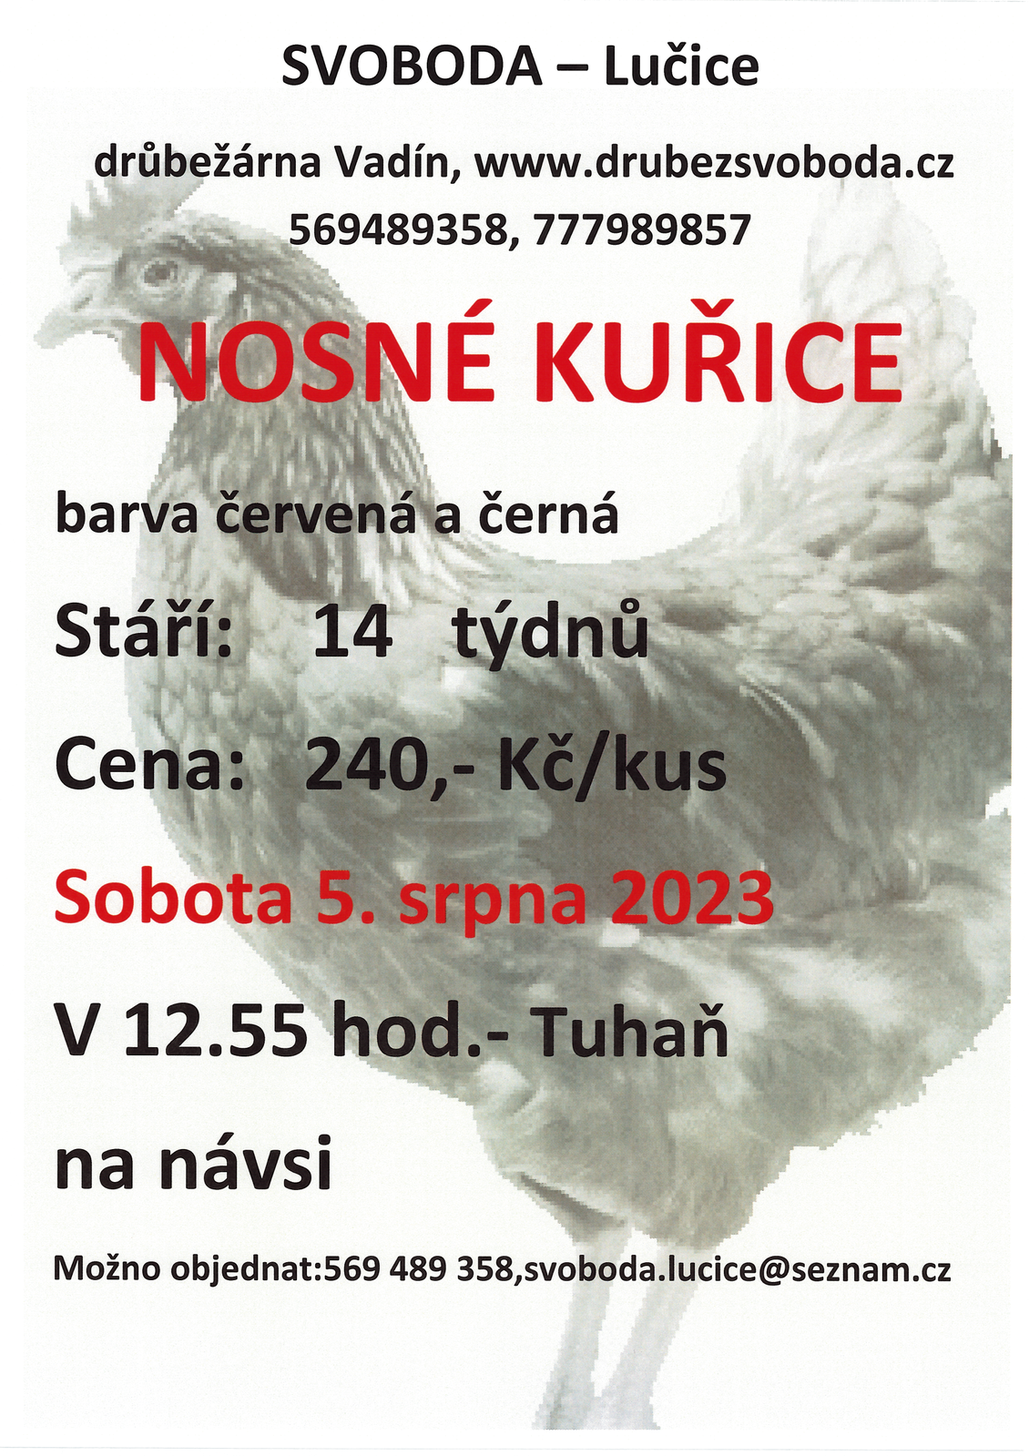 Plakát - prodej kuřic 5.8.2023.tif